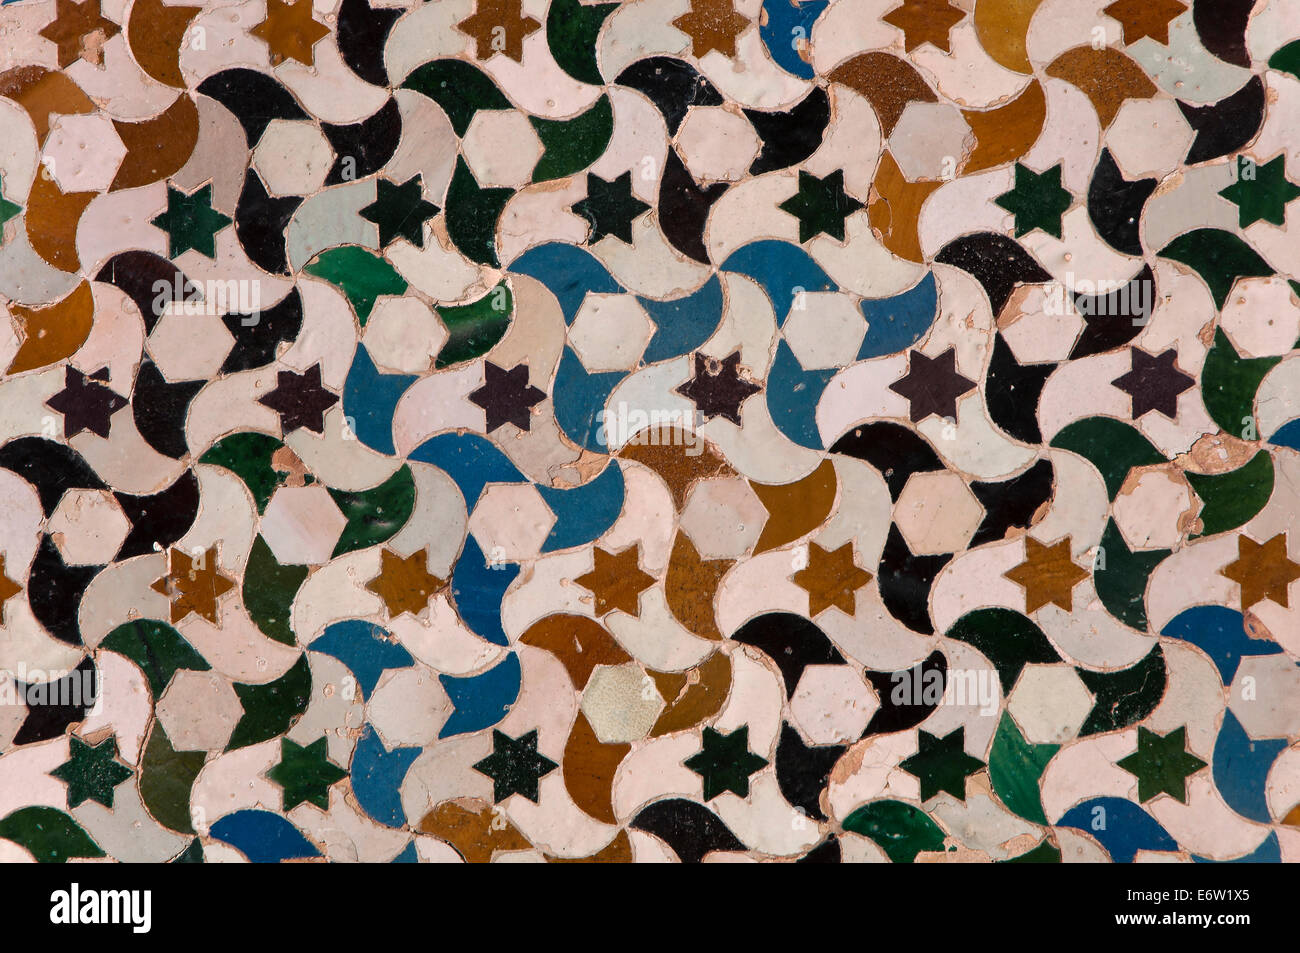 Corte dei mirti - piastrelle arabo, l'Alhambra di Granada, regione dell'Andalusia, Spagna, Europa Foto Stock